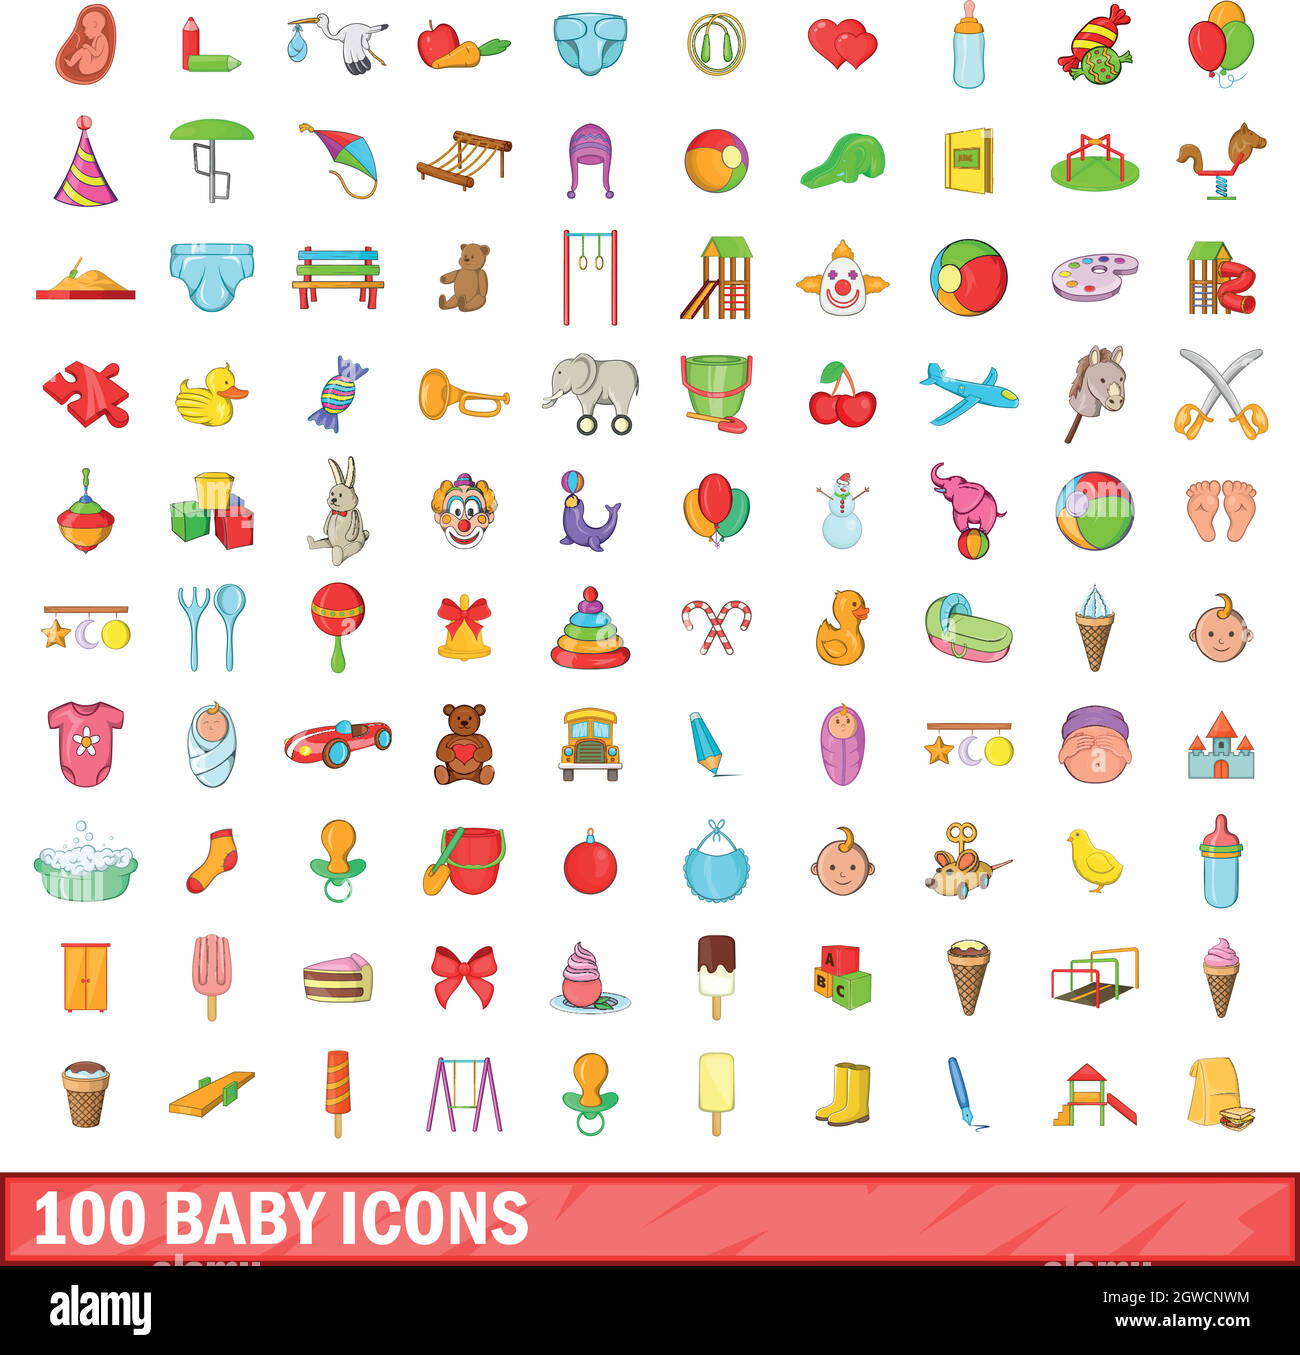 100 kit bébé, style cartoon Illustration de Vecteur